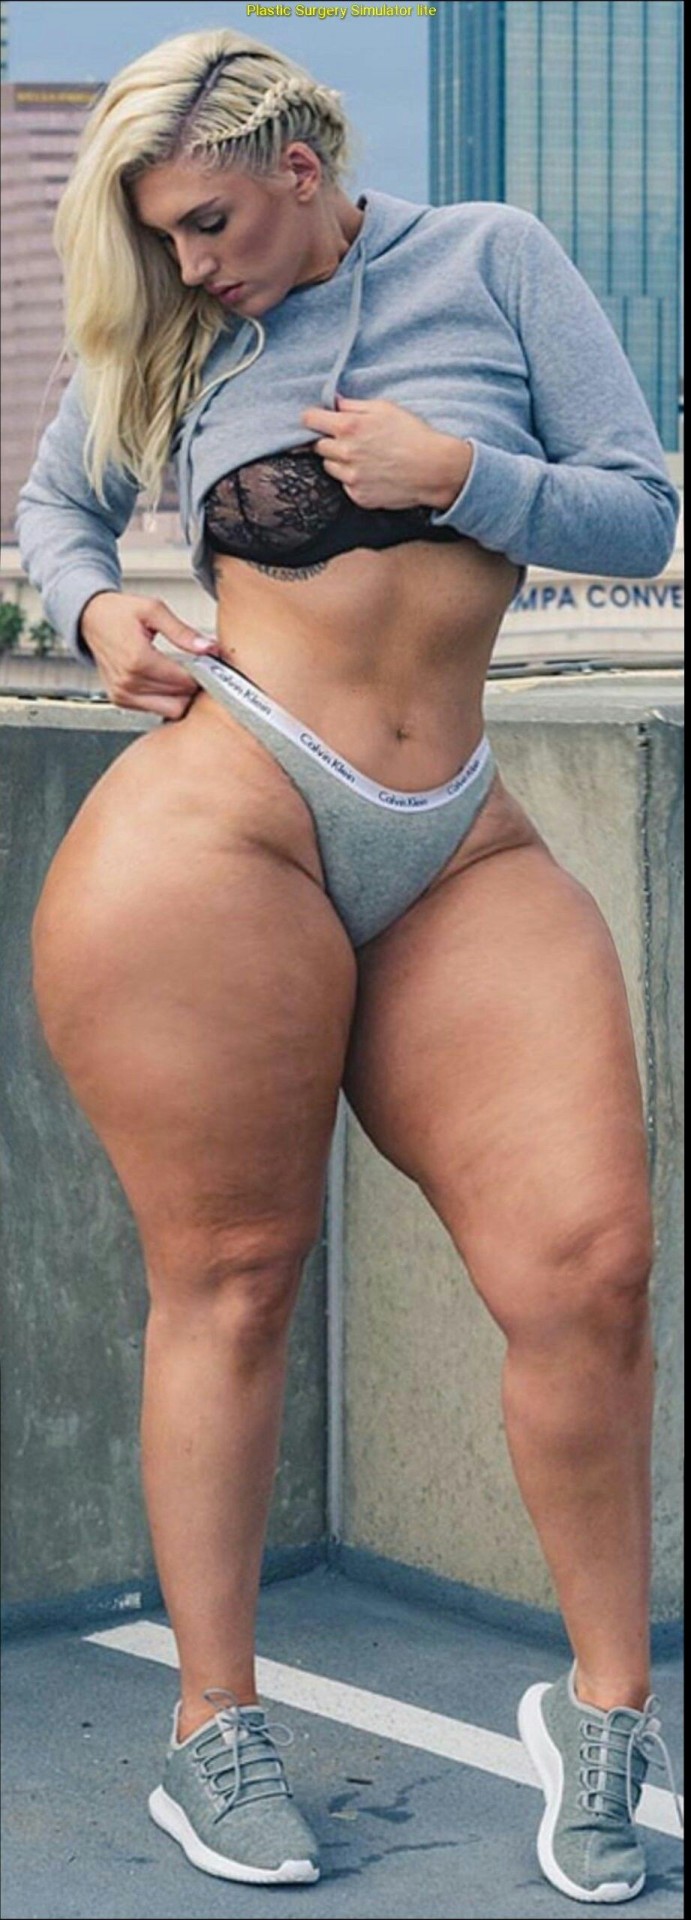 Big ass women nudes